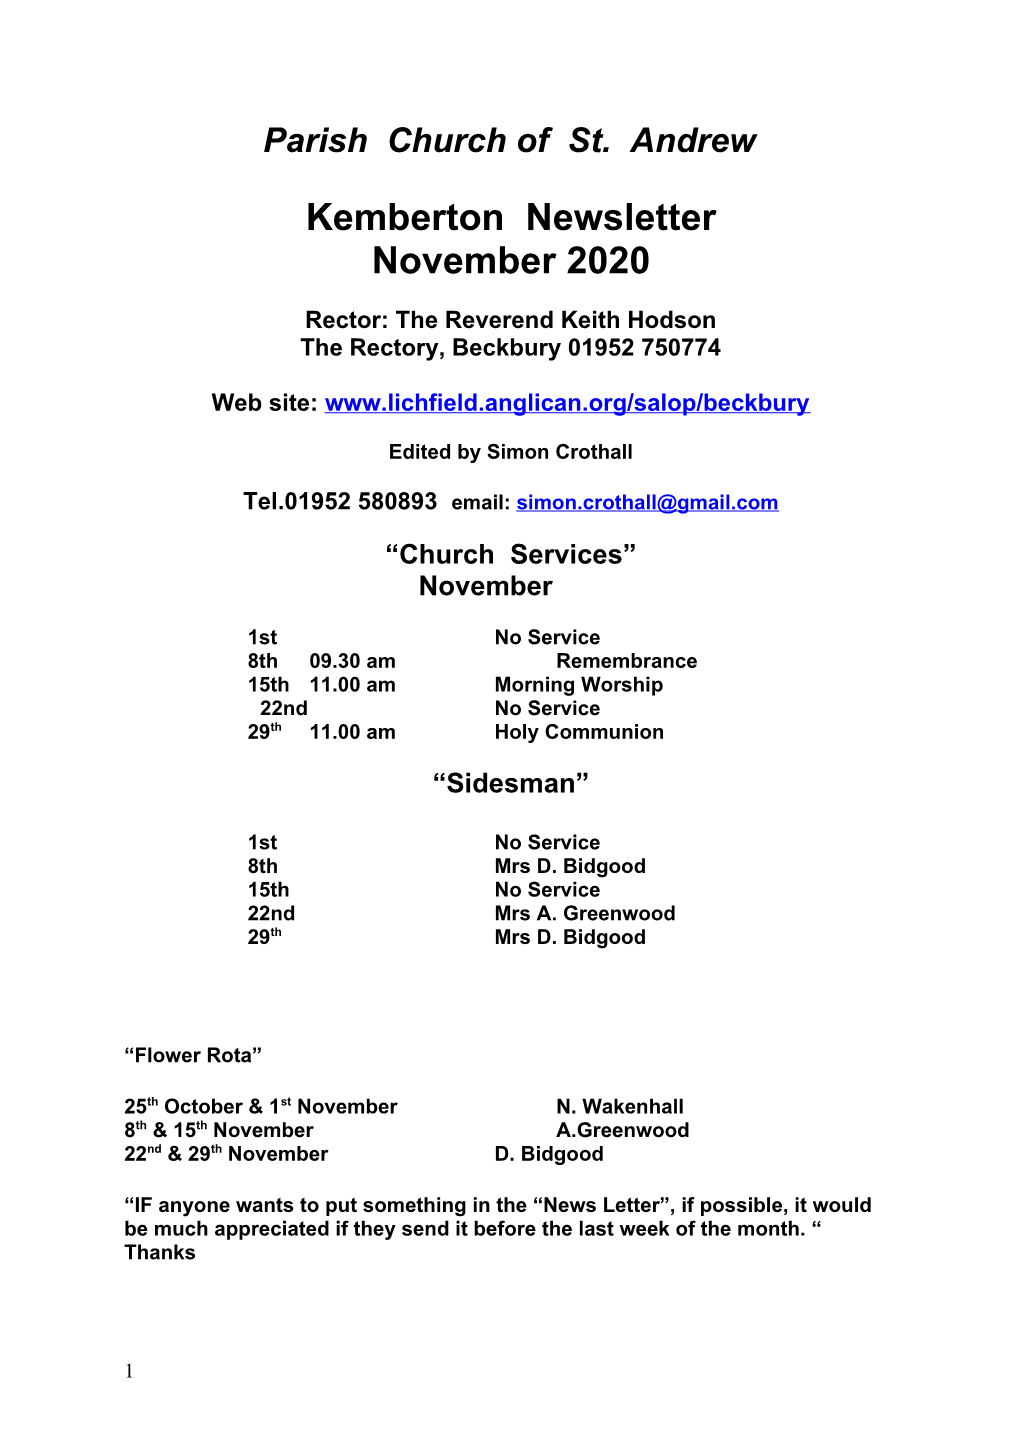 Kemberton Newsletter November 2020